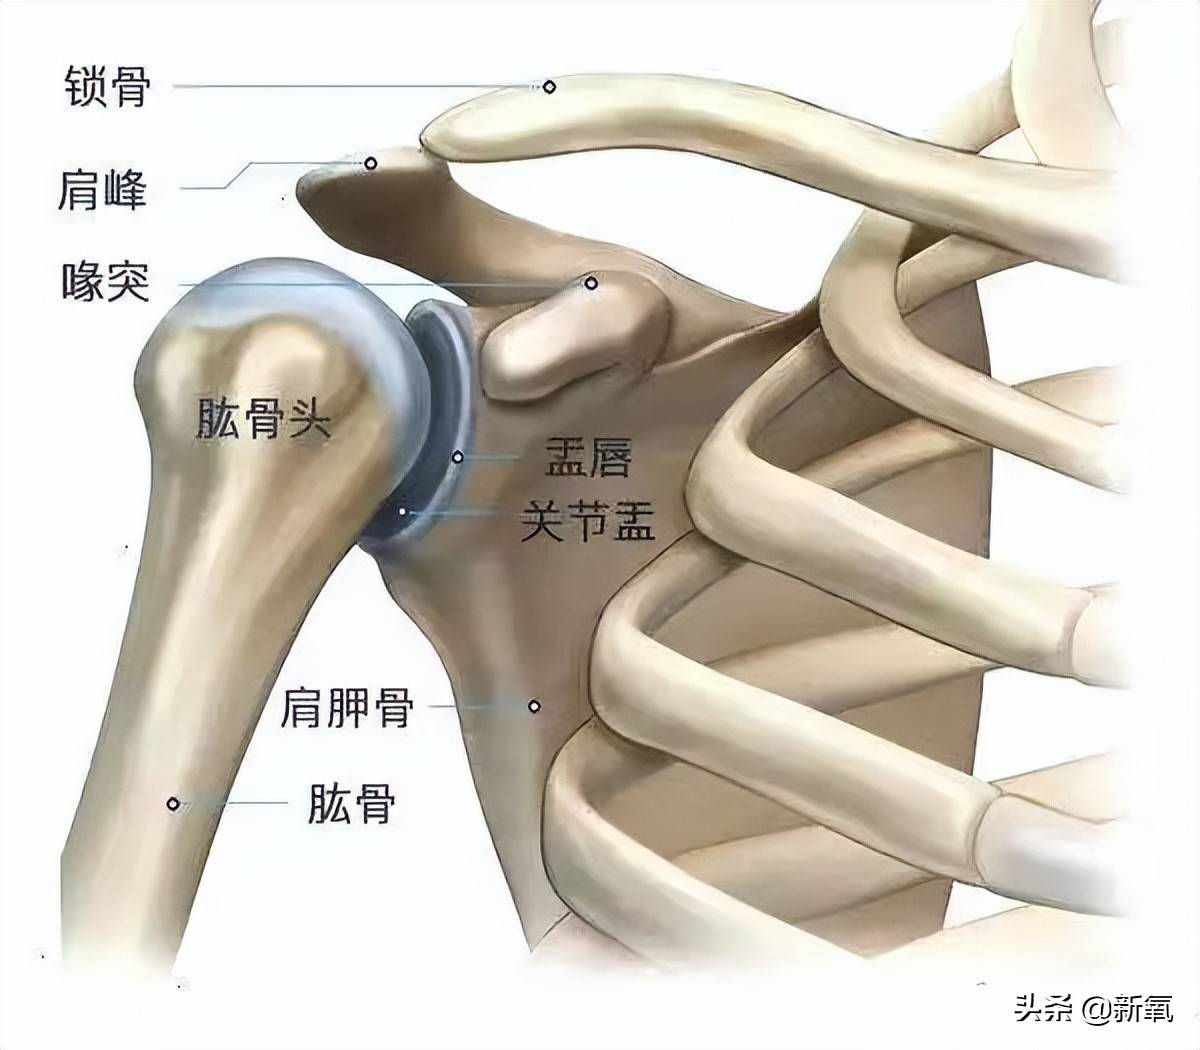 肱骨指大臂那块骨头,原本肱骨的上端应该停留在肩头的凹陷处